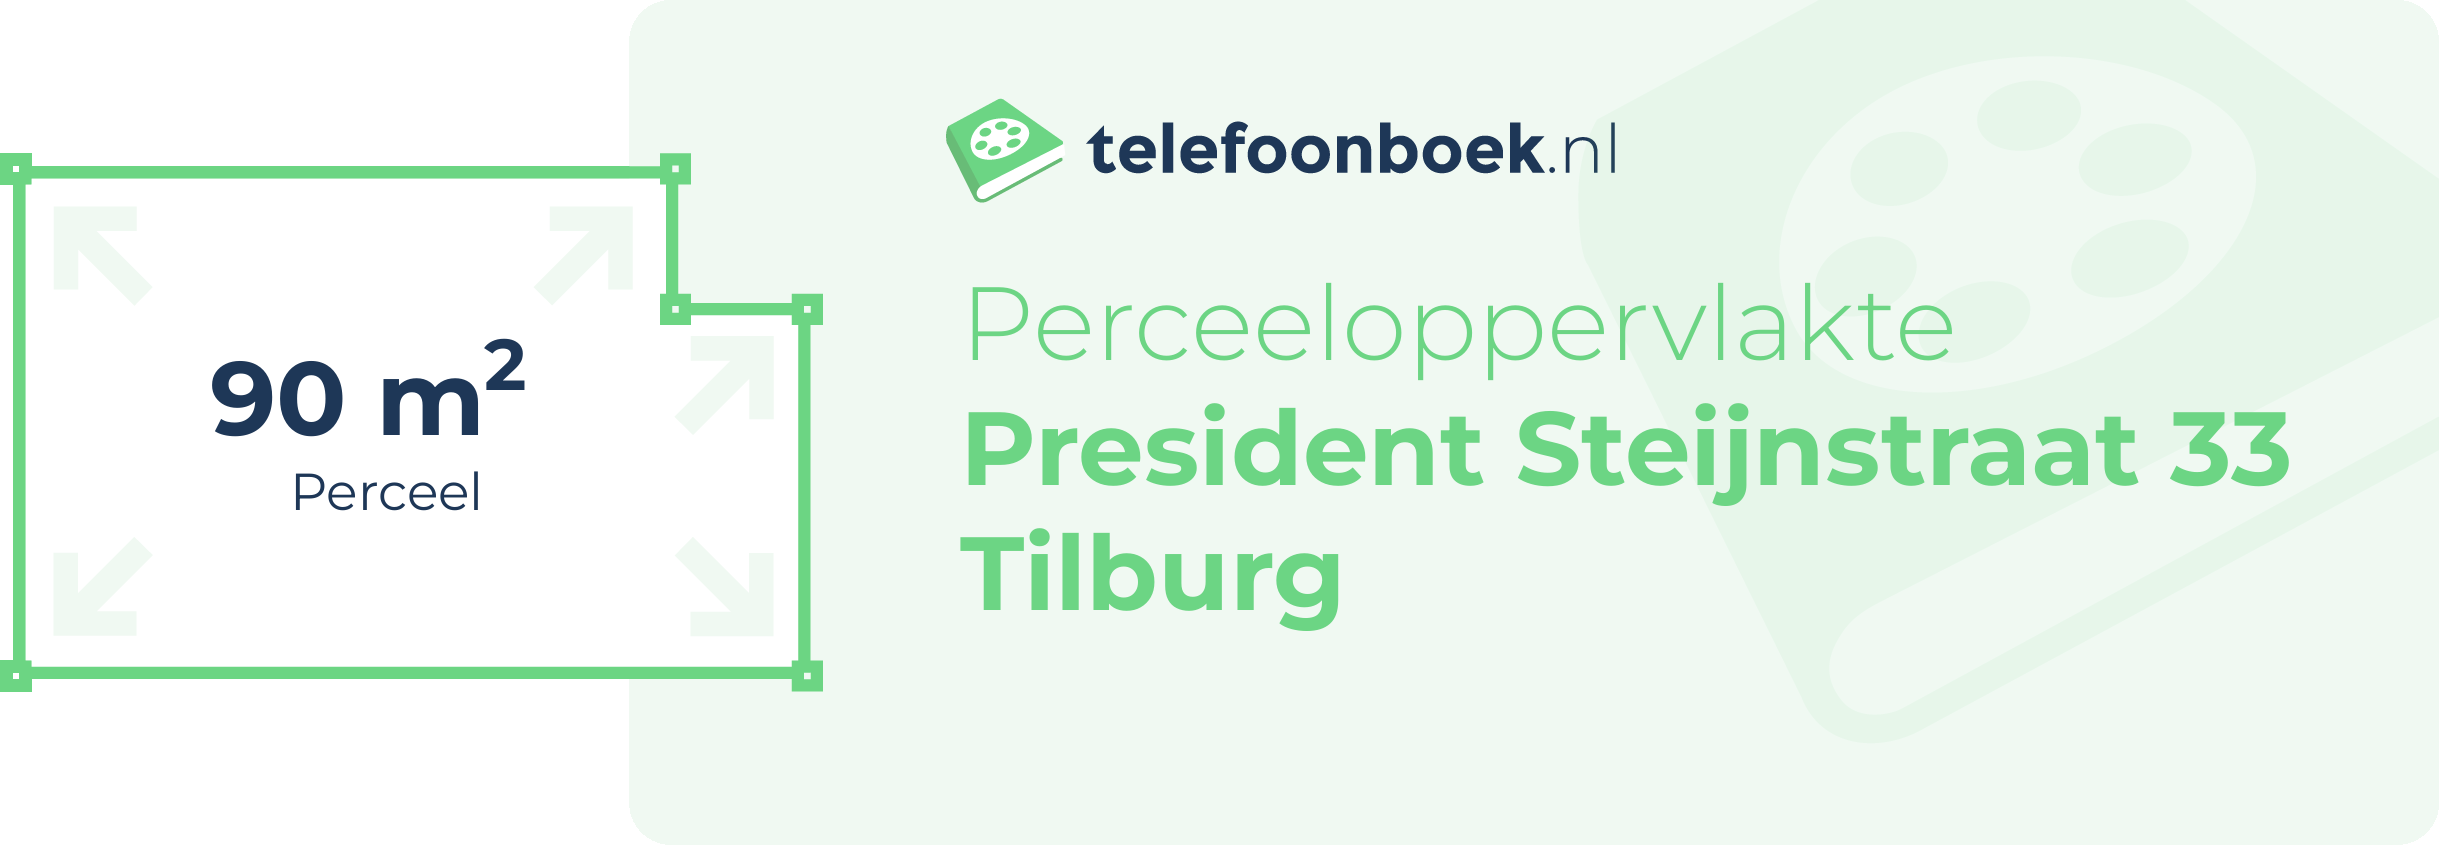 Perceeloppervlakte President Steijnstraat 33 Tilburg